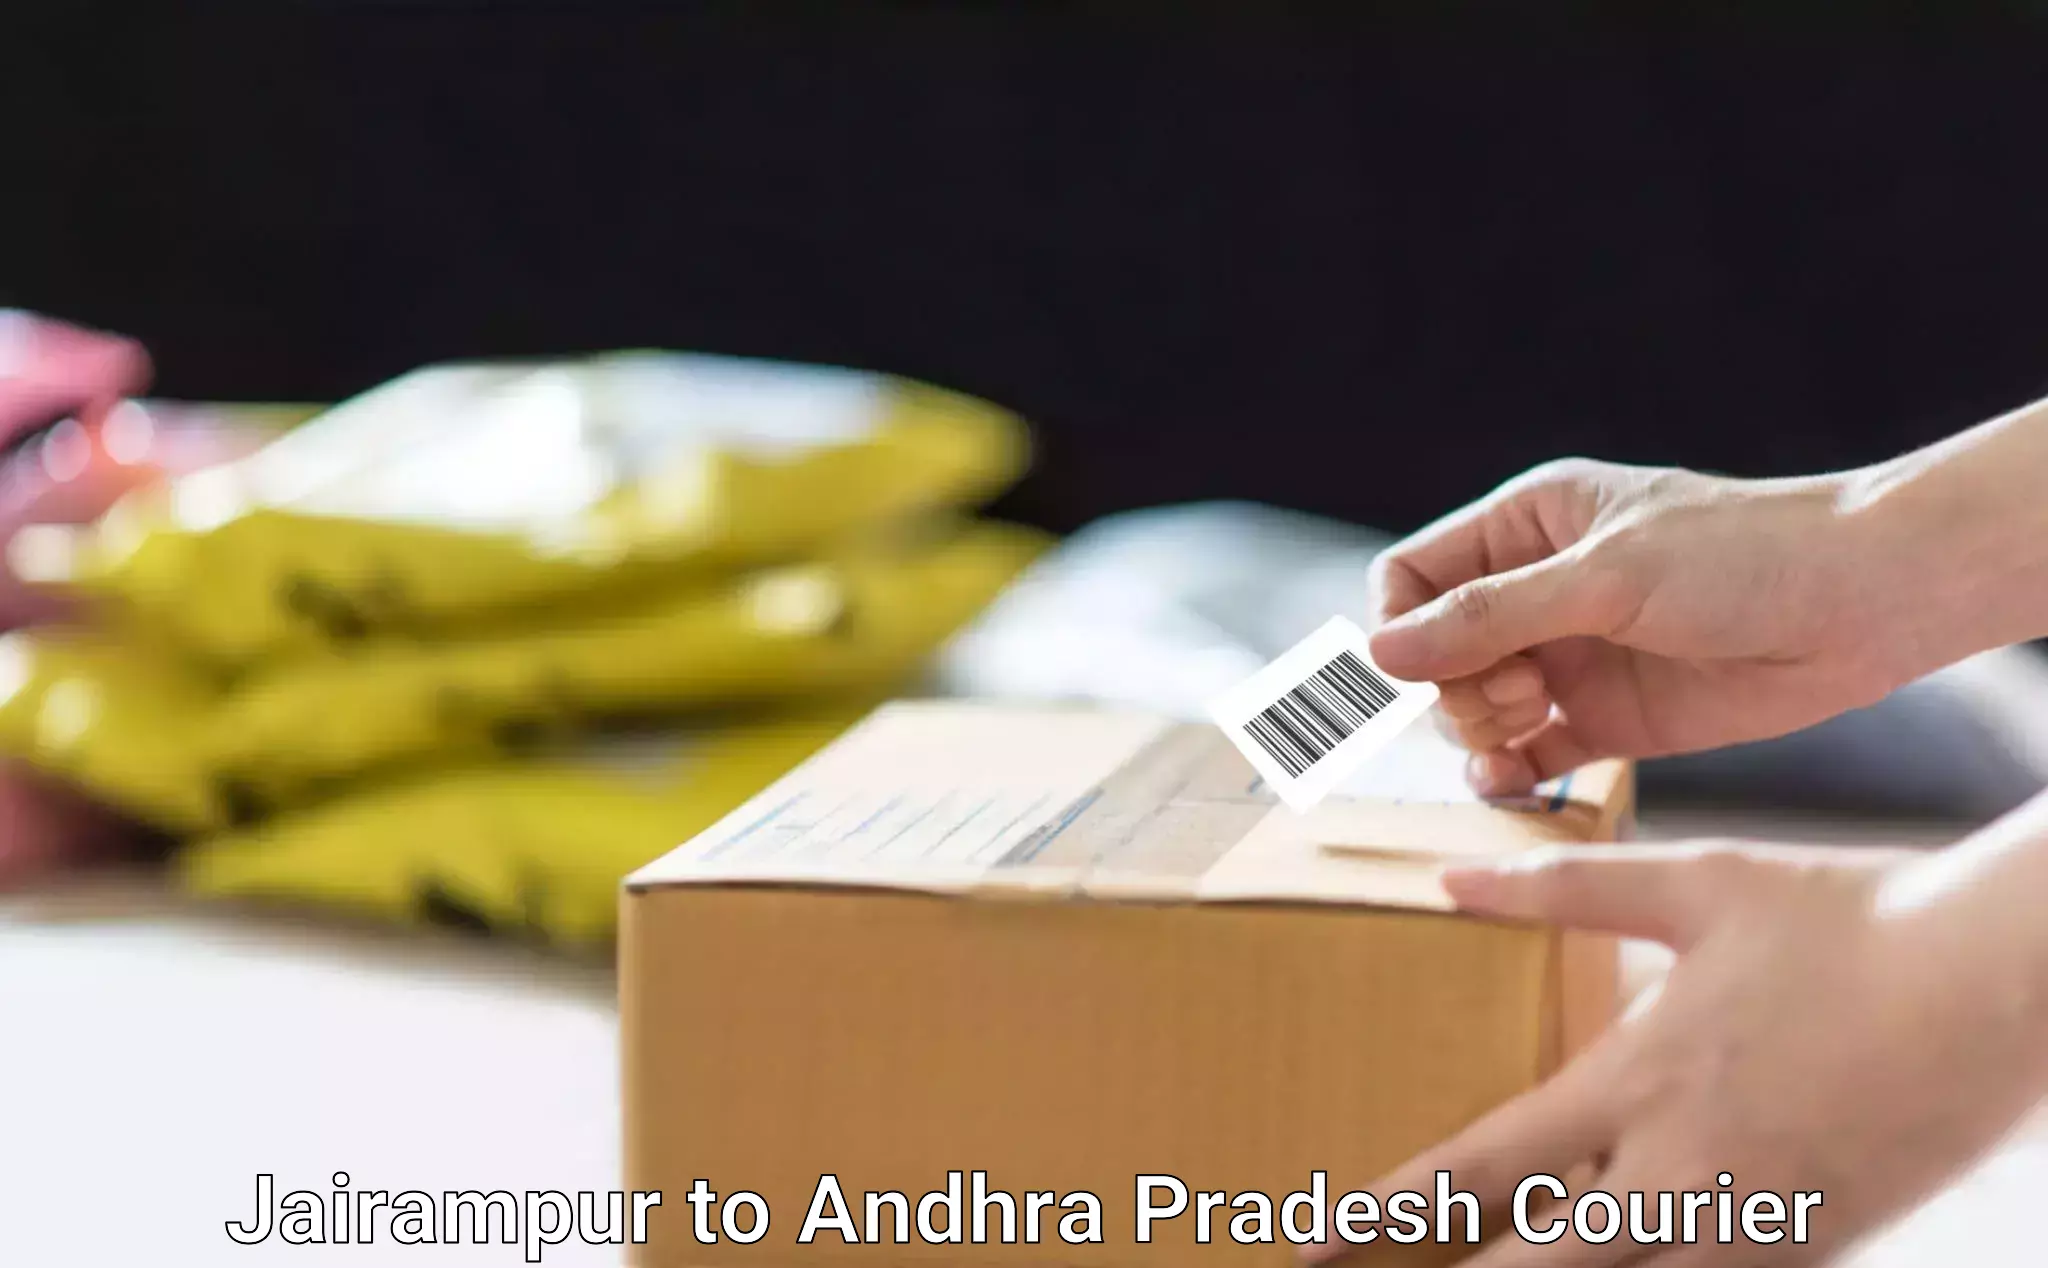 Affordable parcel rates Jairampur to Andhra Pradesh